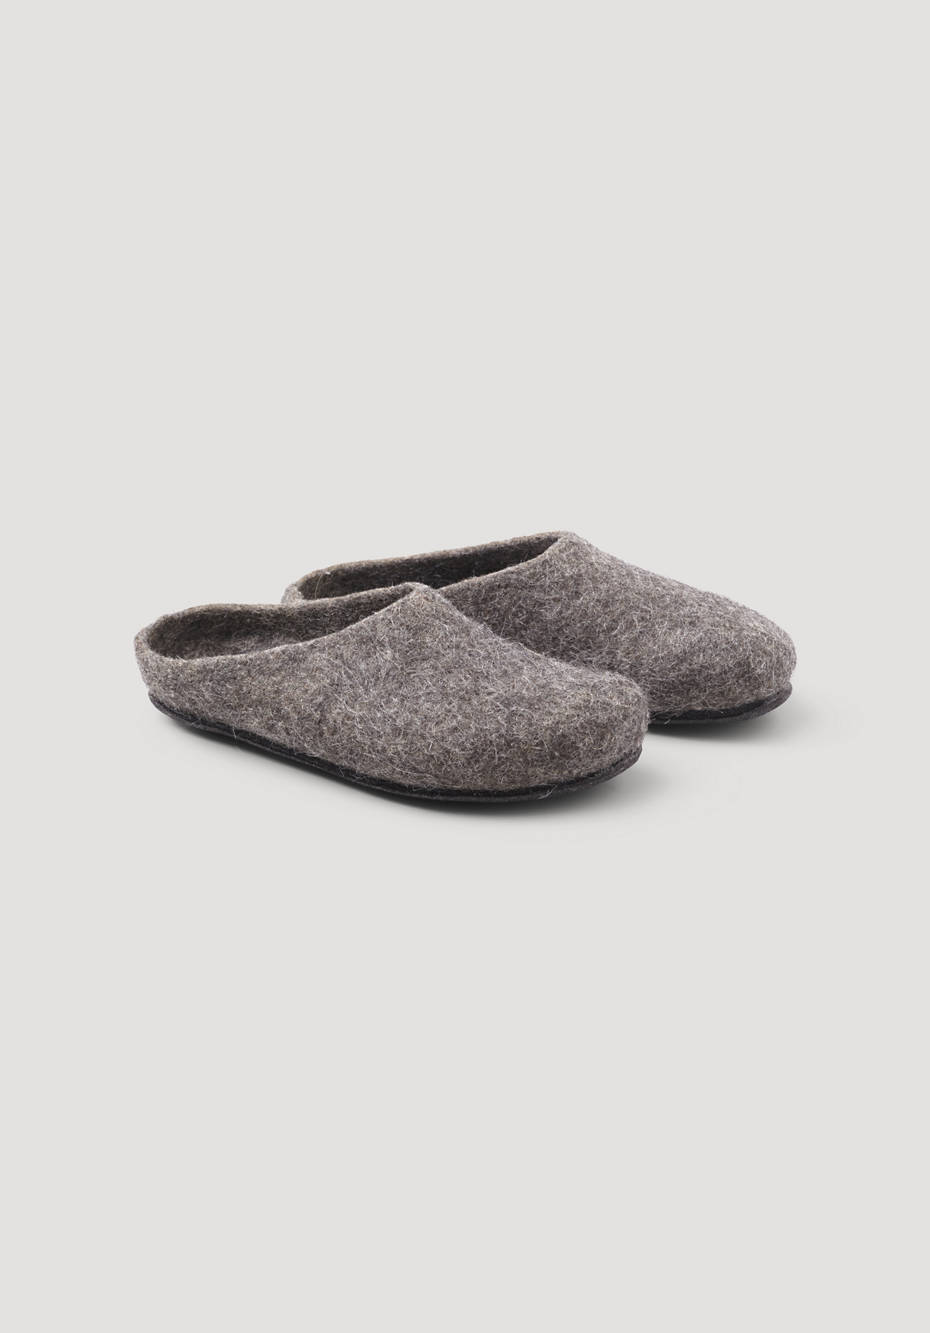 Tyrolean stone sheep slipper